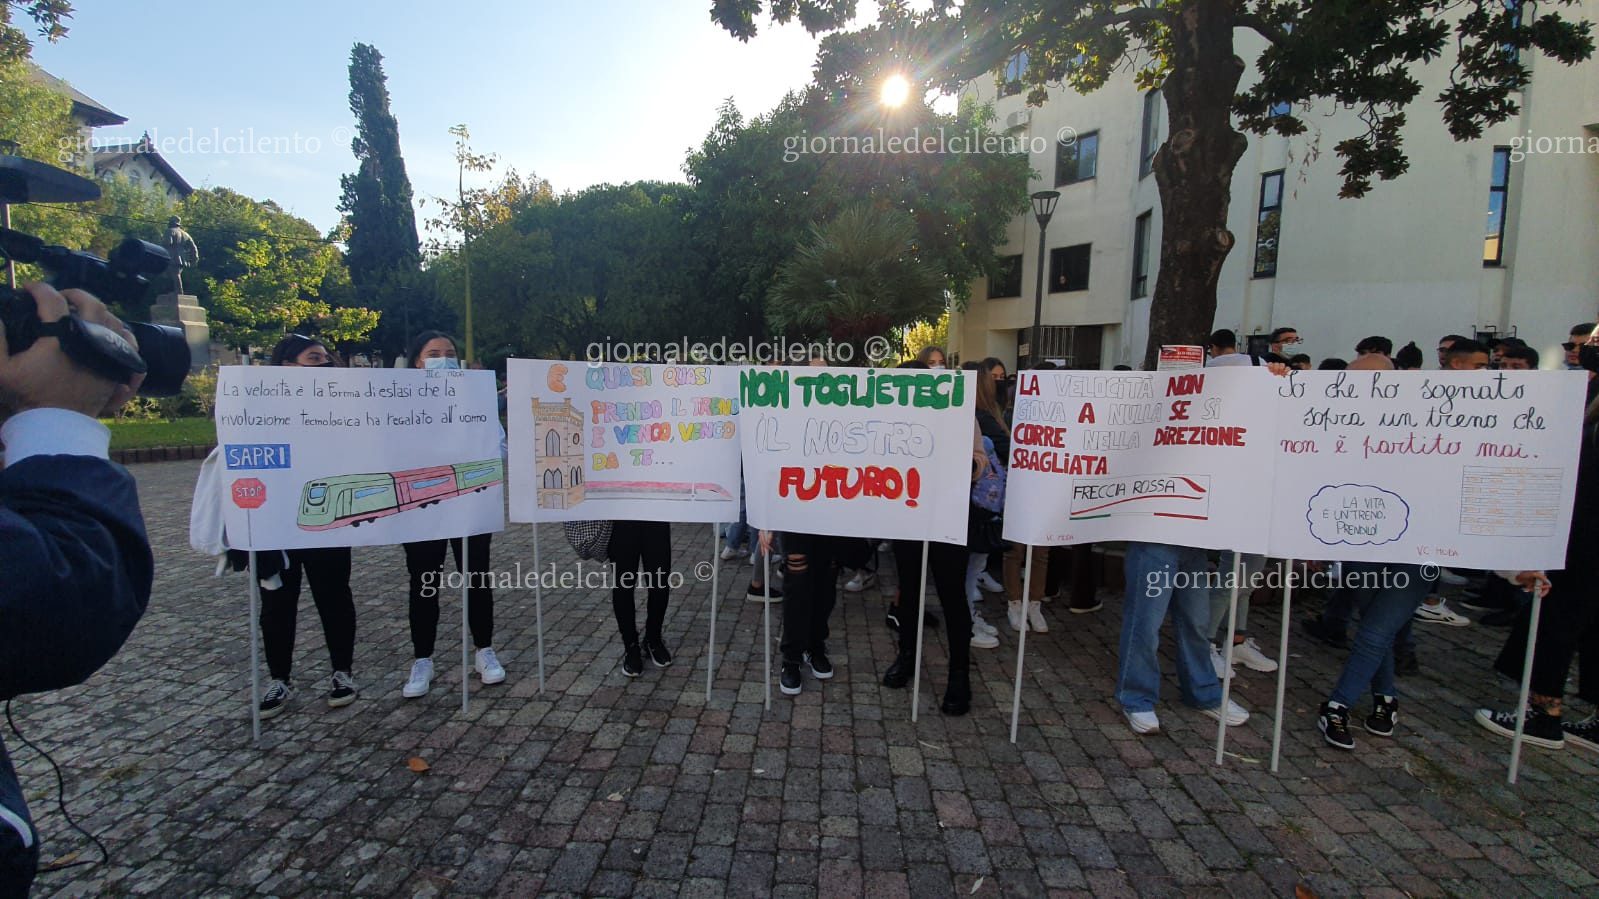 Alta velocità, a Sapri è il giorno della mobilitazione: la protesta contro RFI